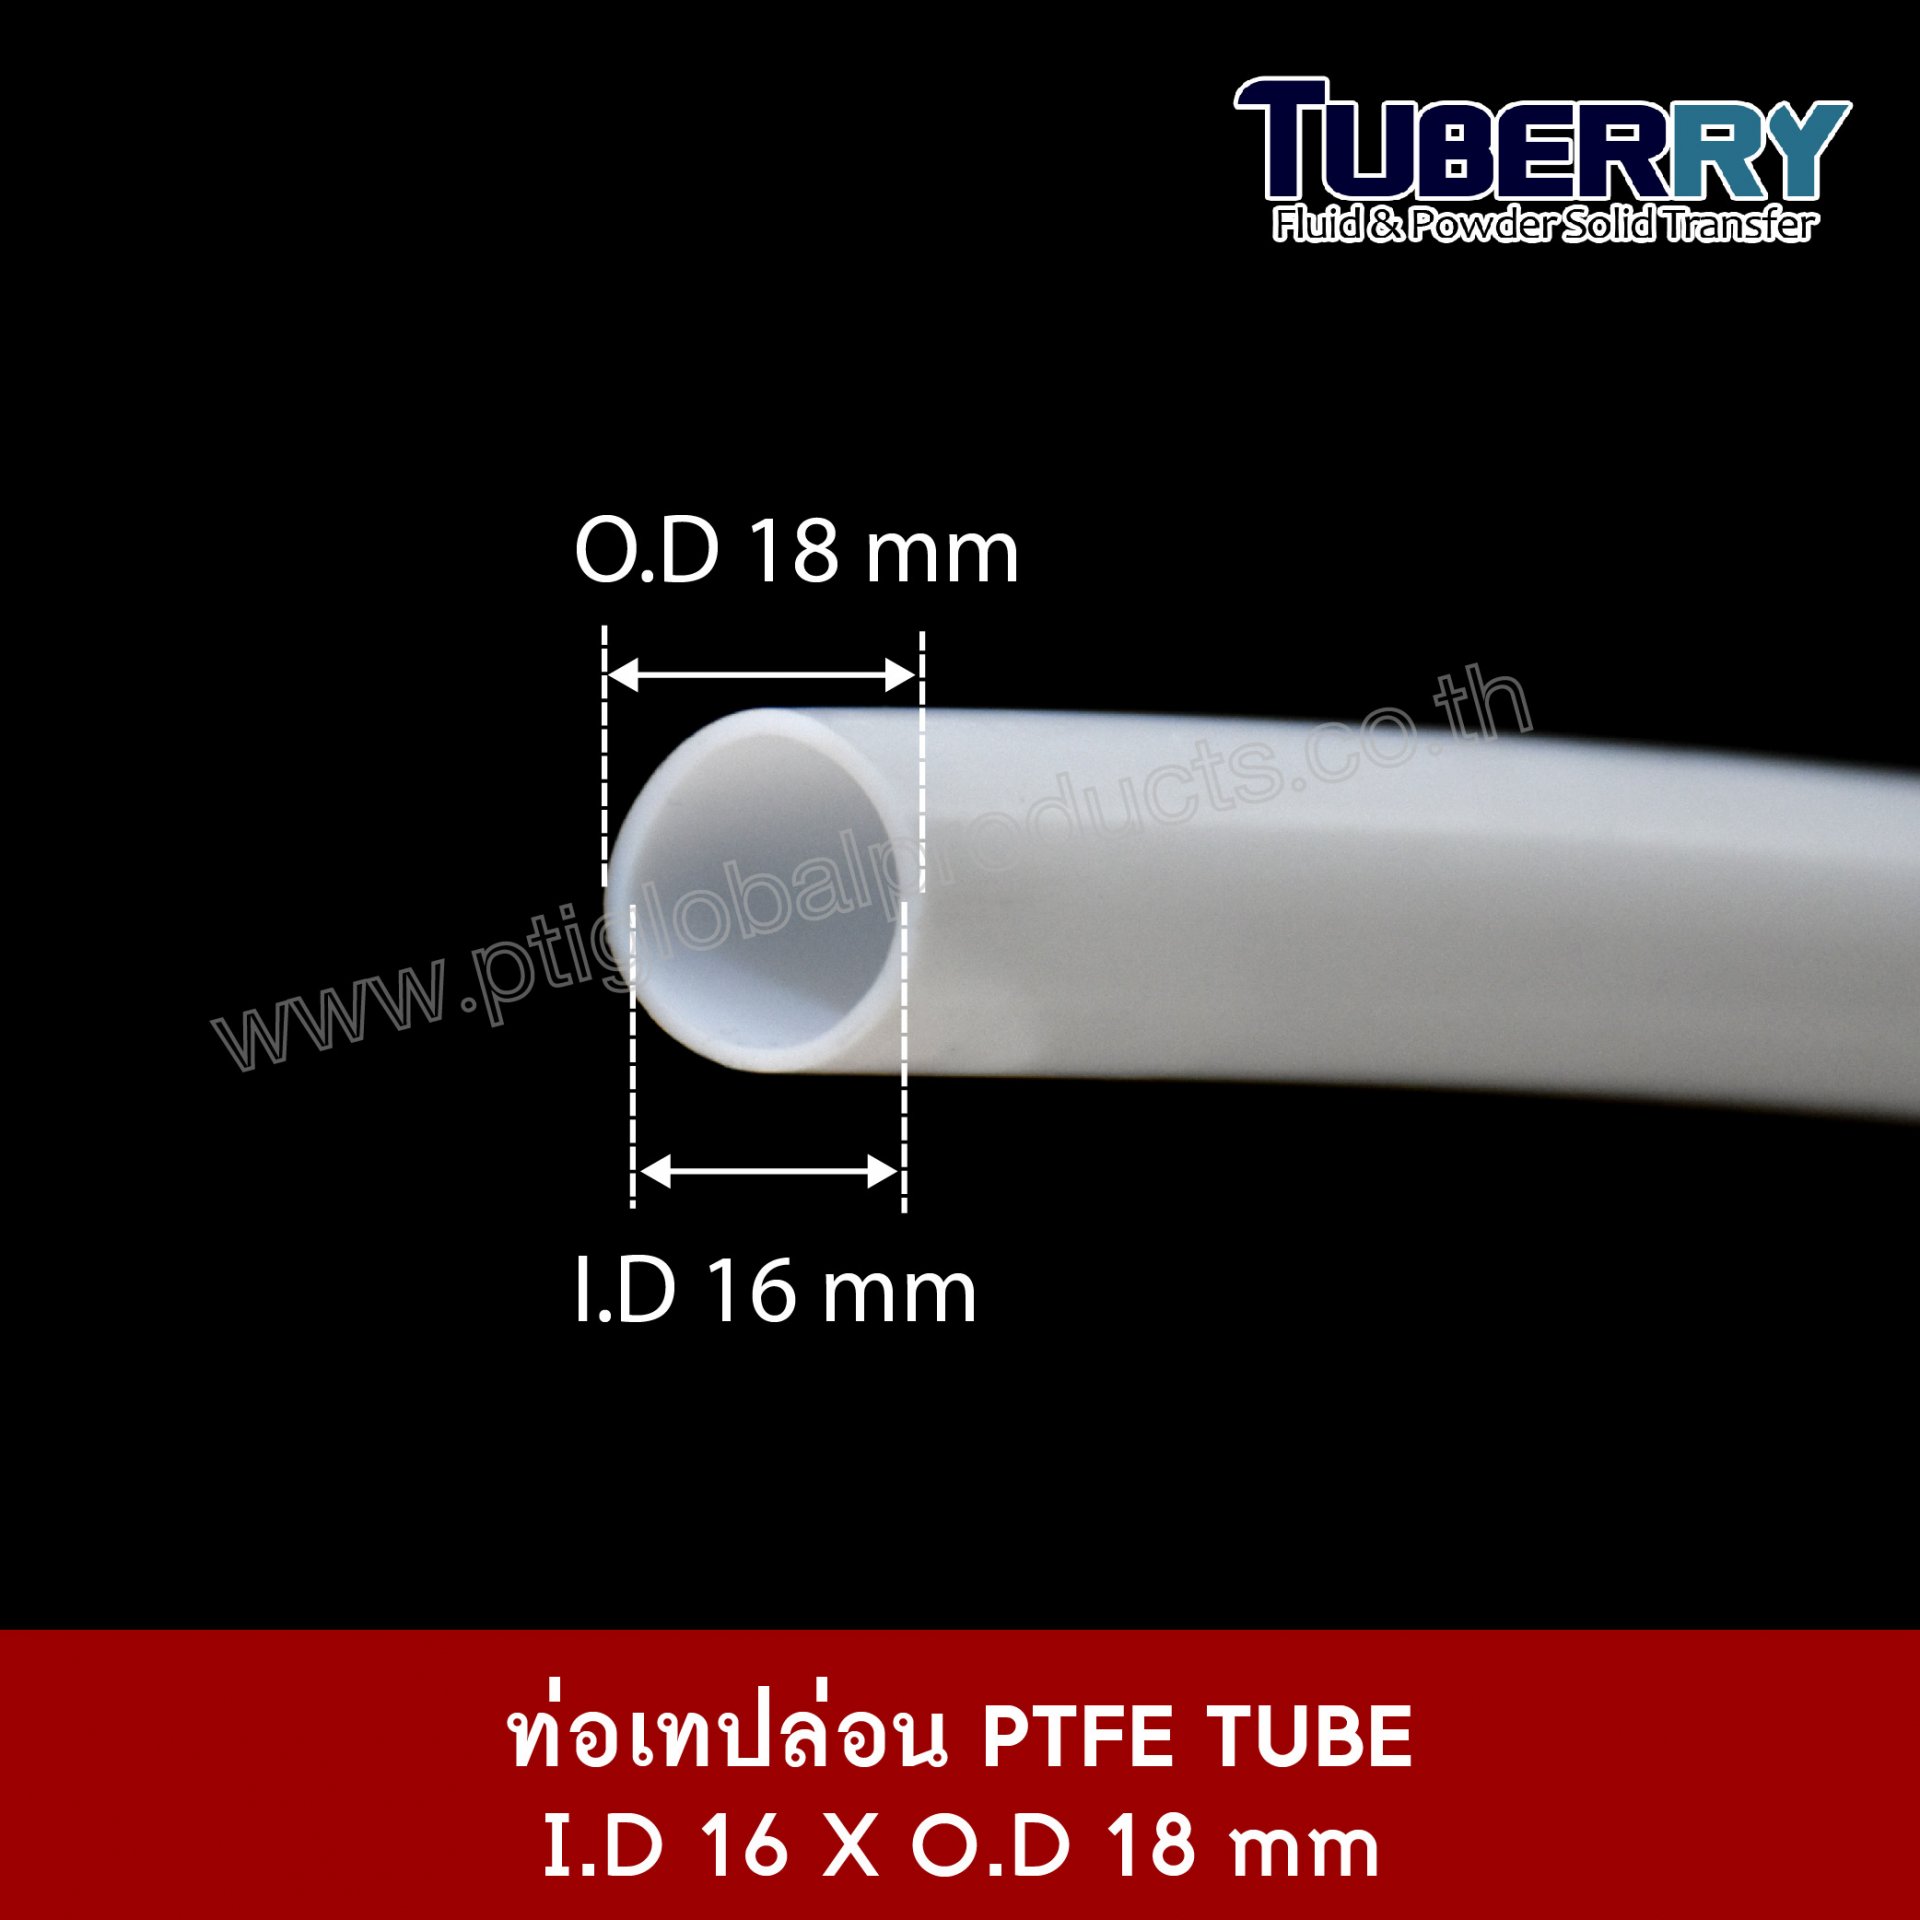 PTFE TUBE I.D 16 X O.D 18 mm